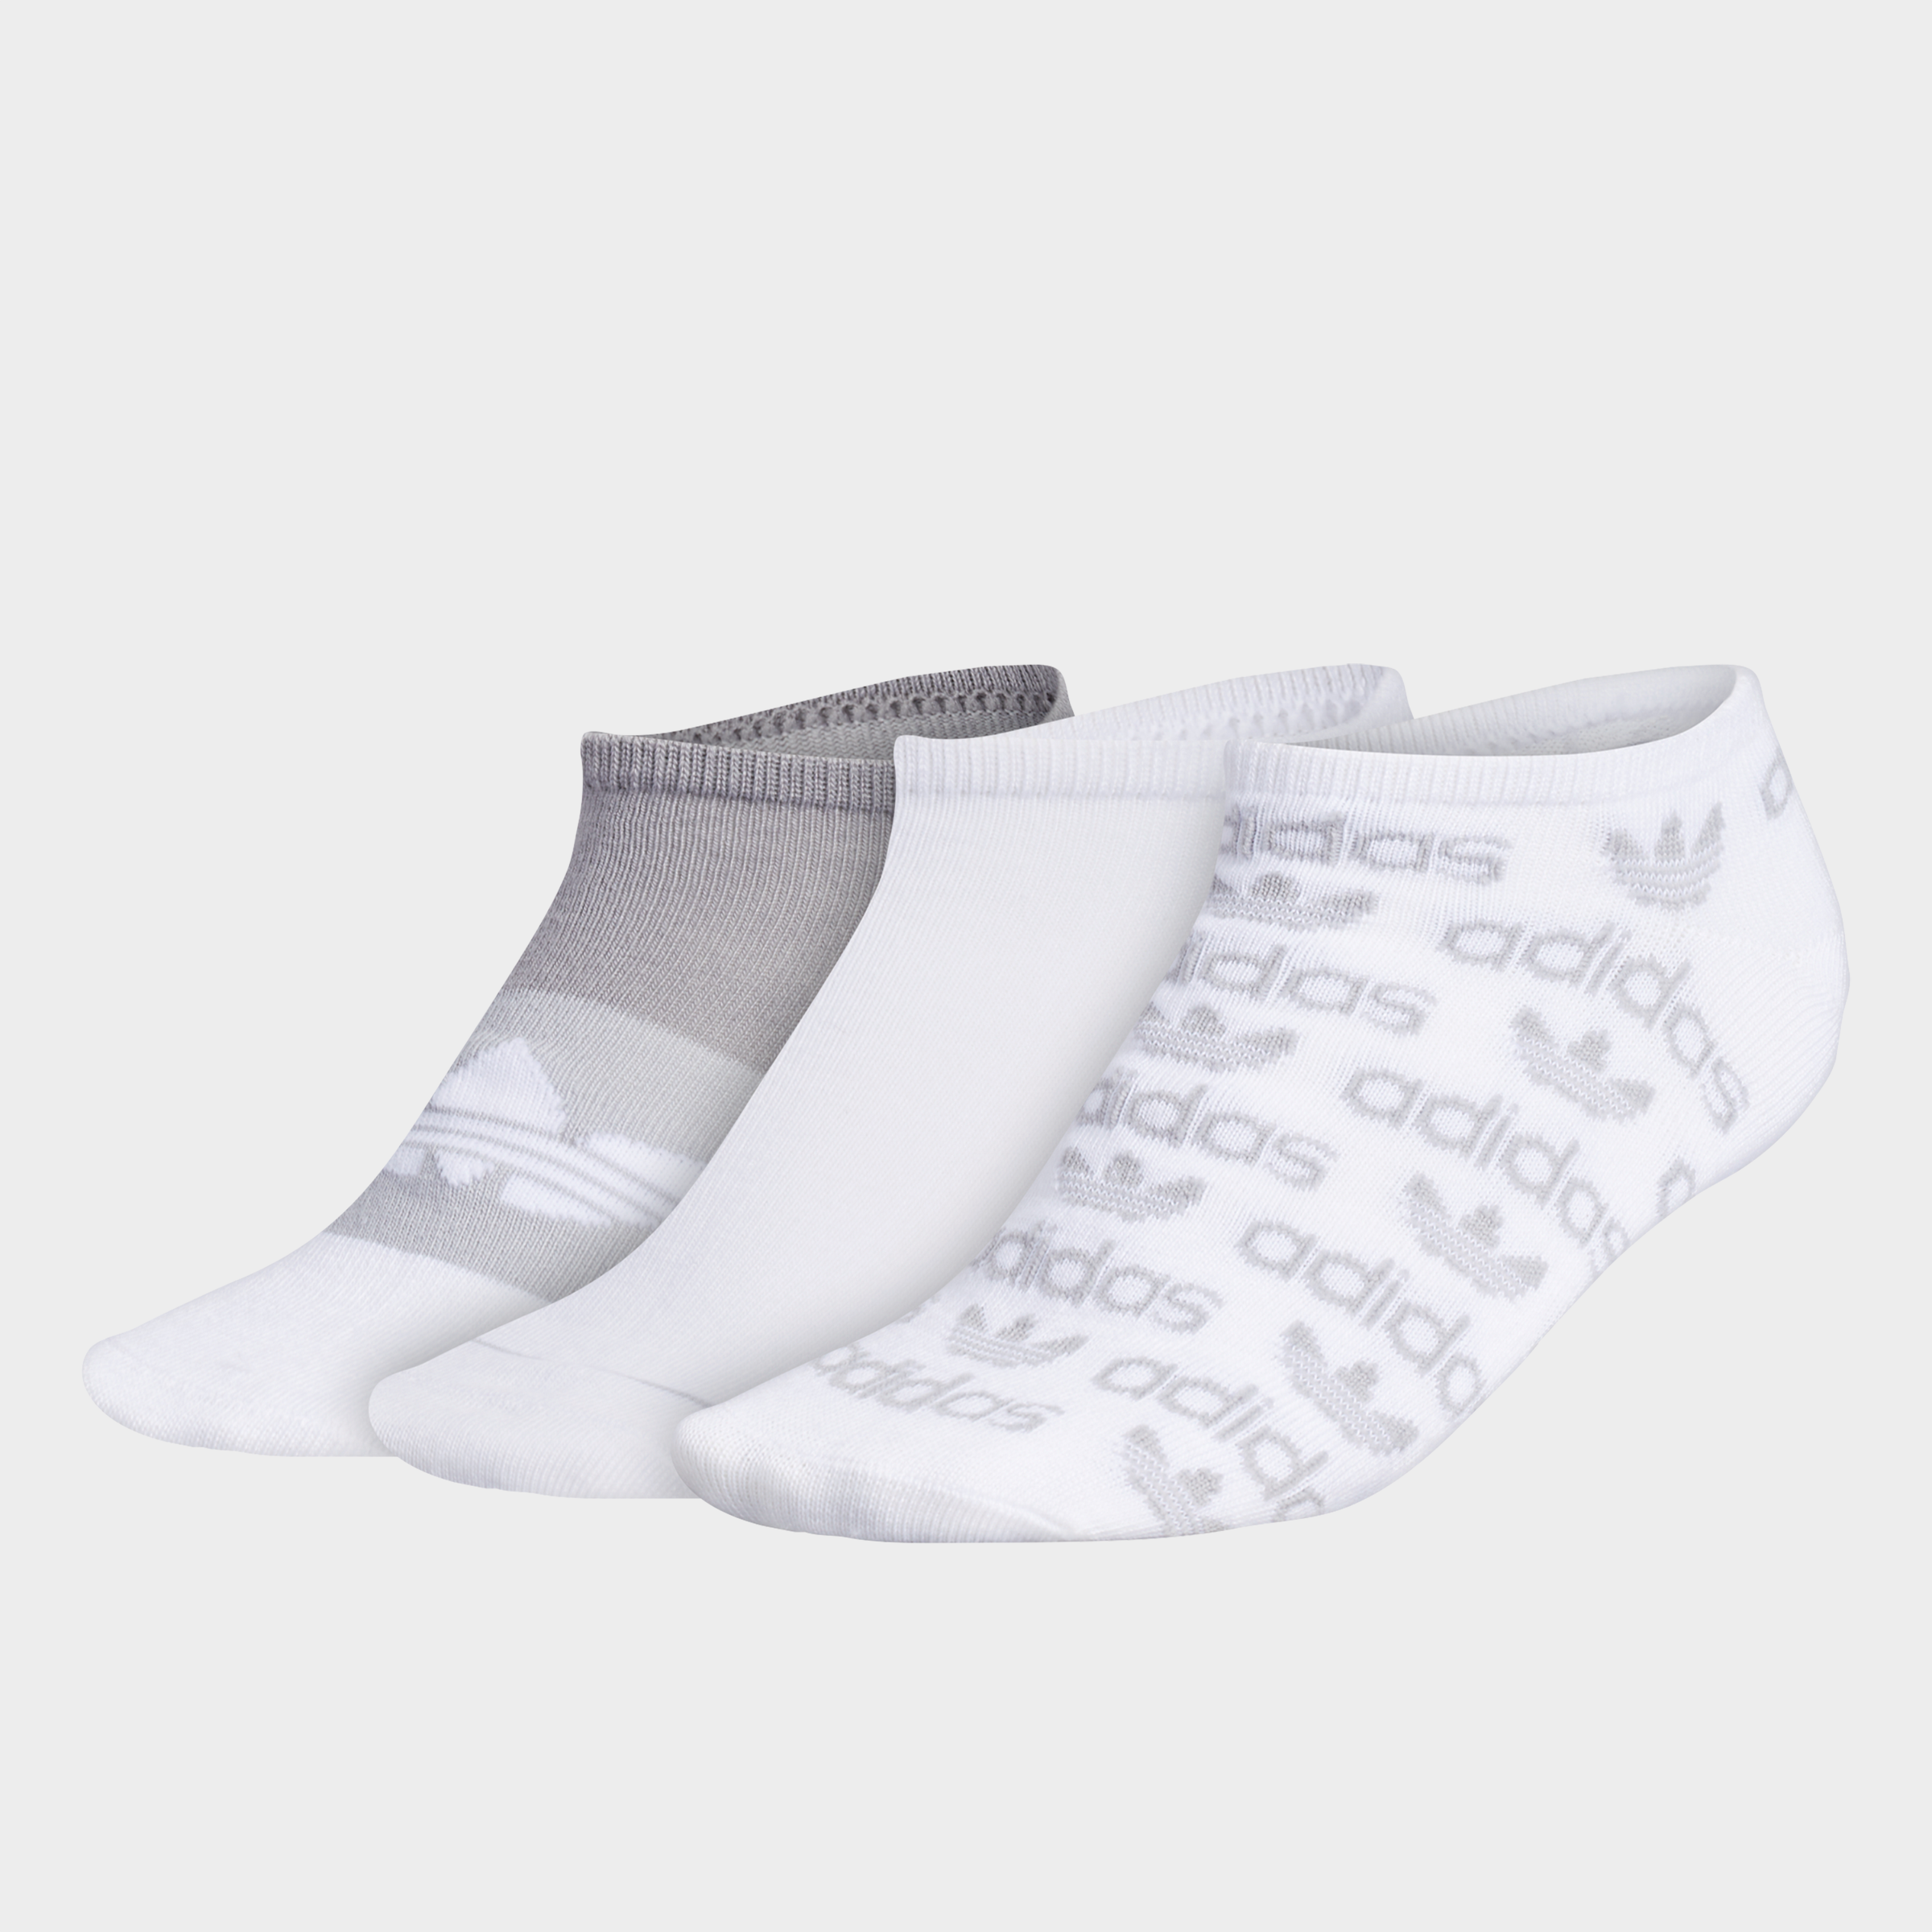 adidas fuzzy socks